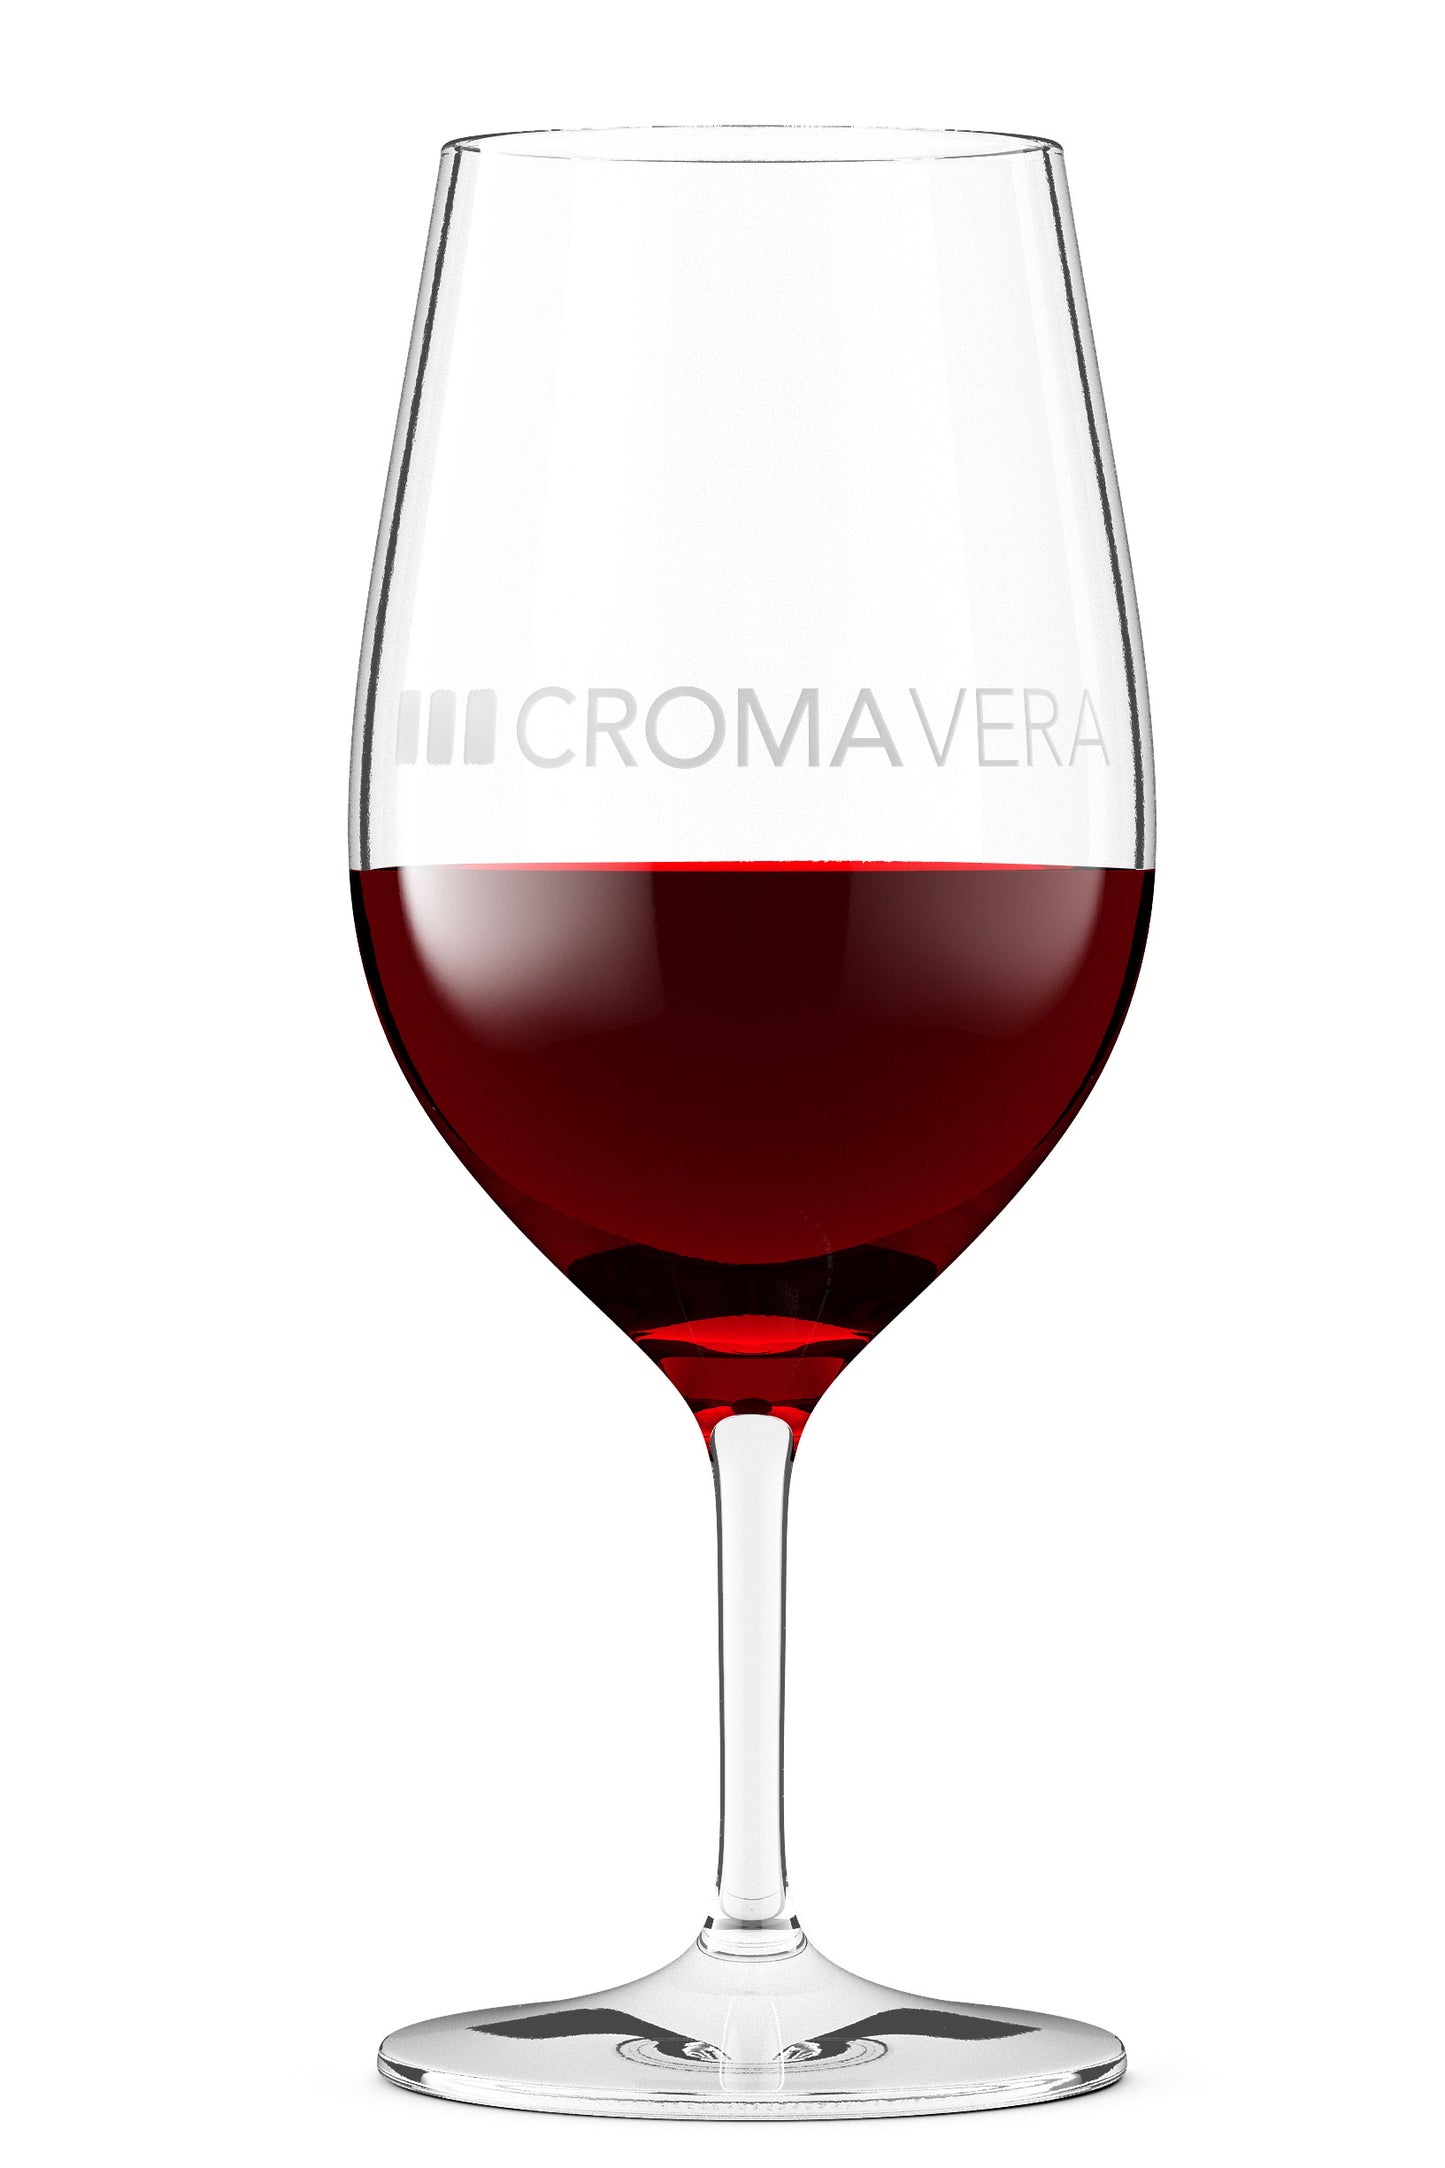 Croma Vera Carbonic Grenache in a wine glass